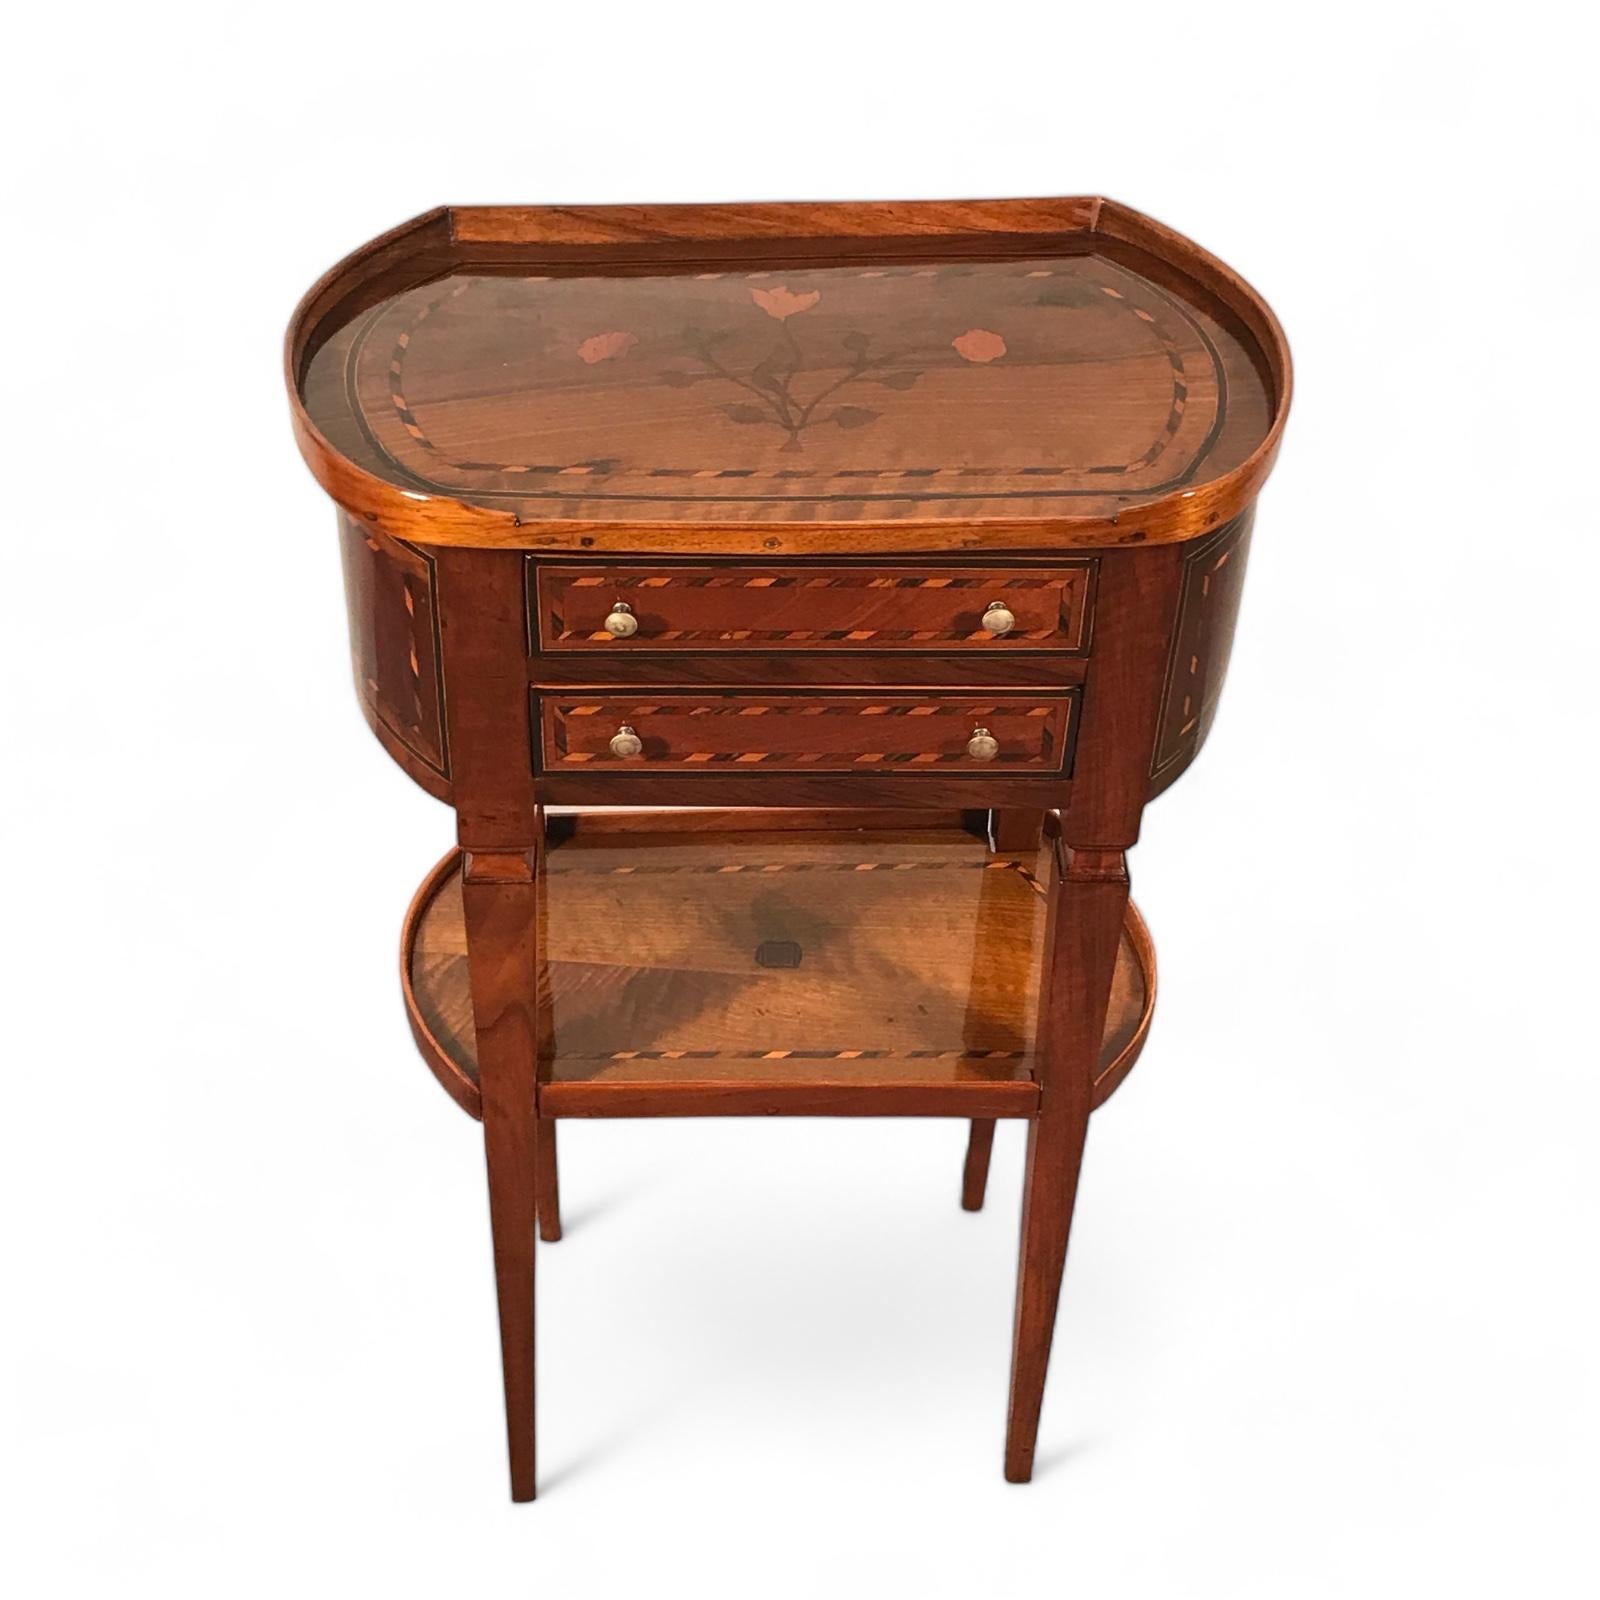 Remontez le temps avec cette captivante petite table d'appoint Louis XVI, fabriquée avec amour vers les années 1780-90. Chaque facette de cette pièce raconte une histoire d'élégance intemporelle et de savoir-faire inégalé. Reposant sur quatre pieds